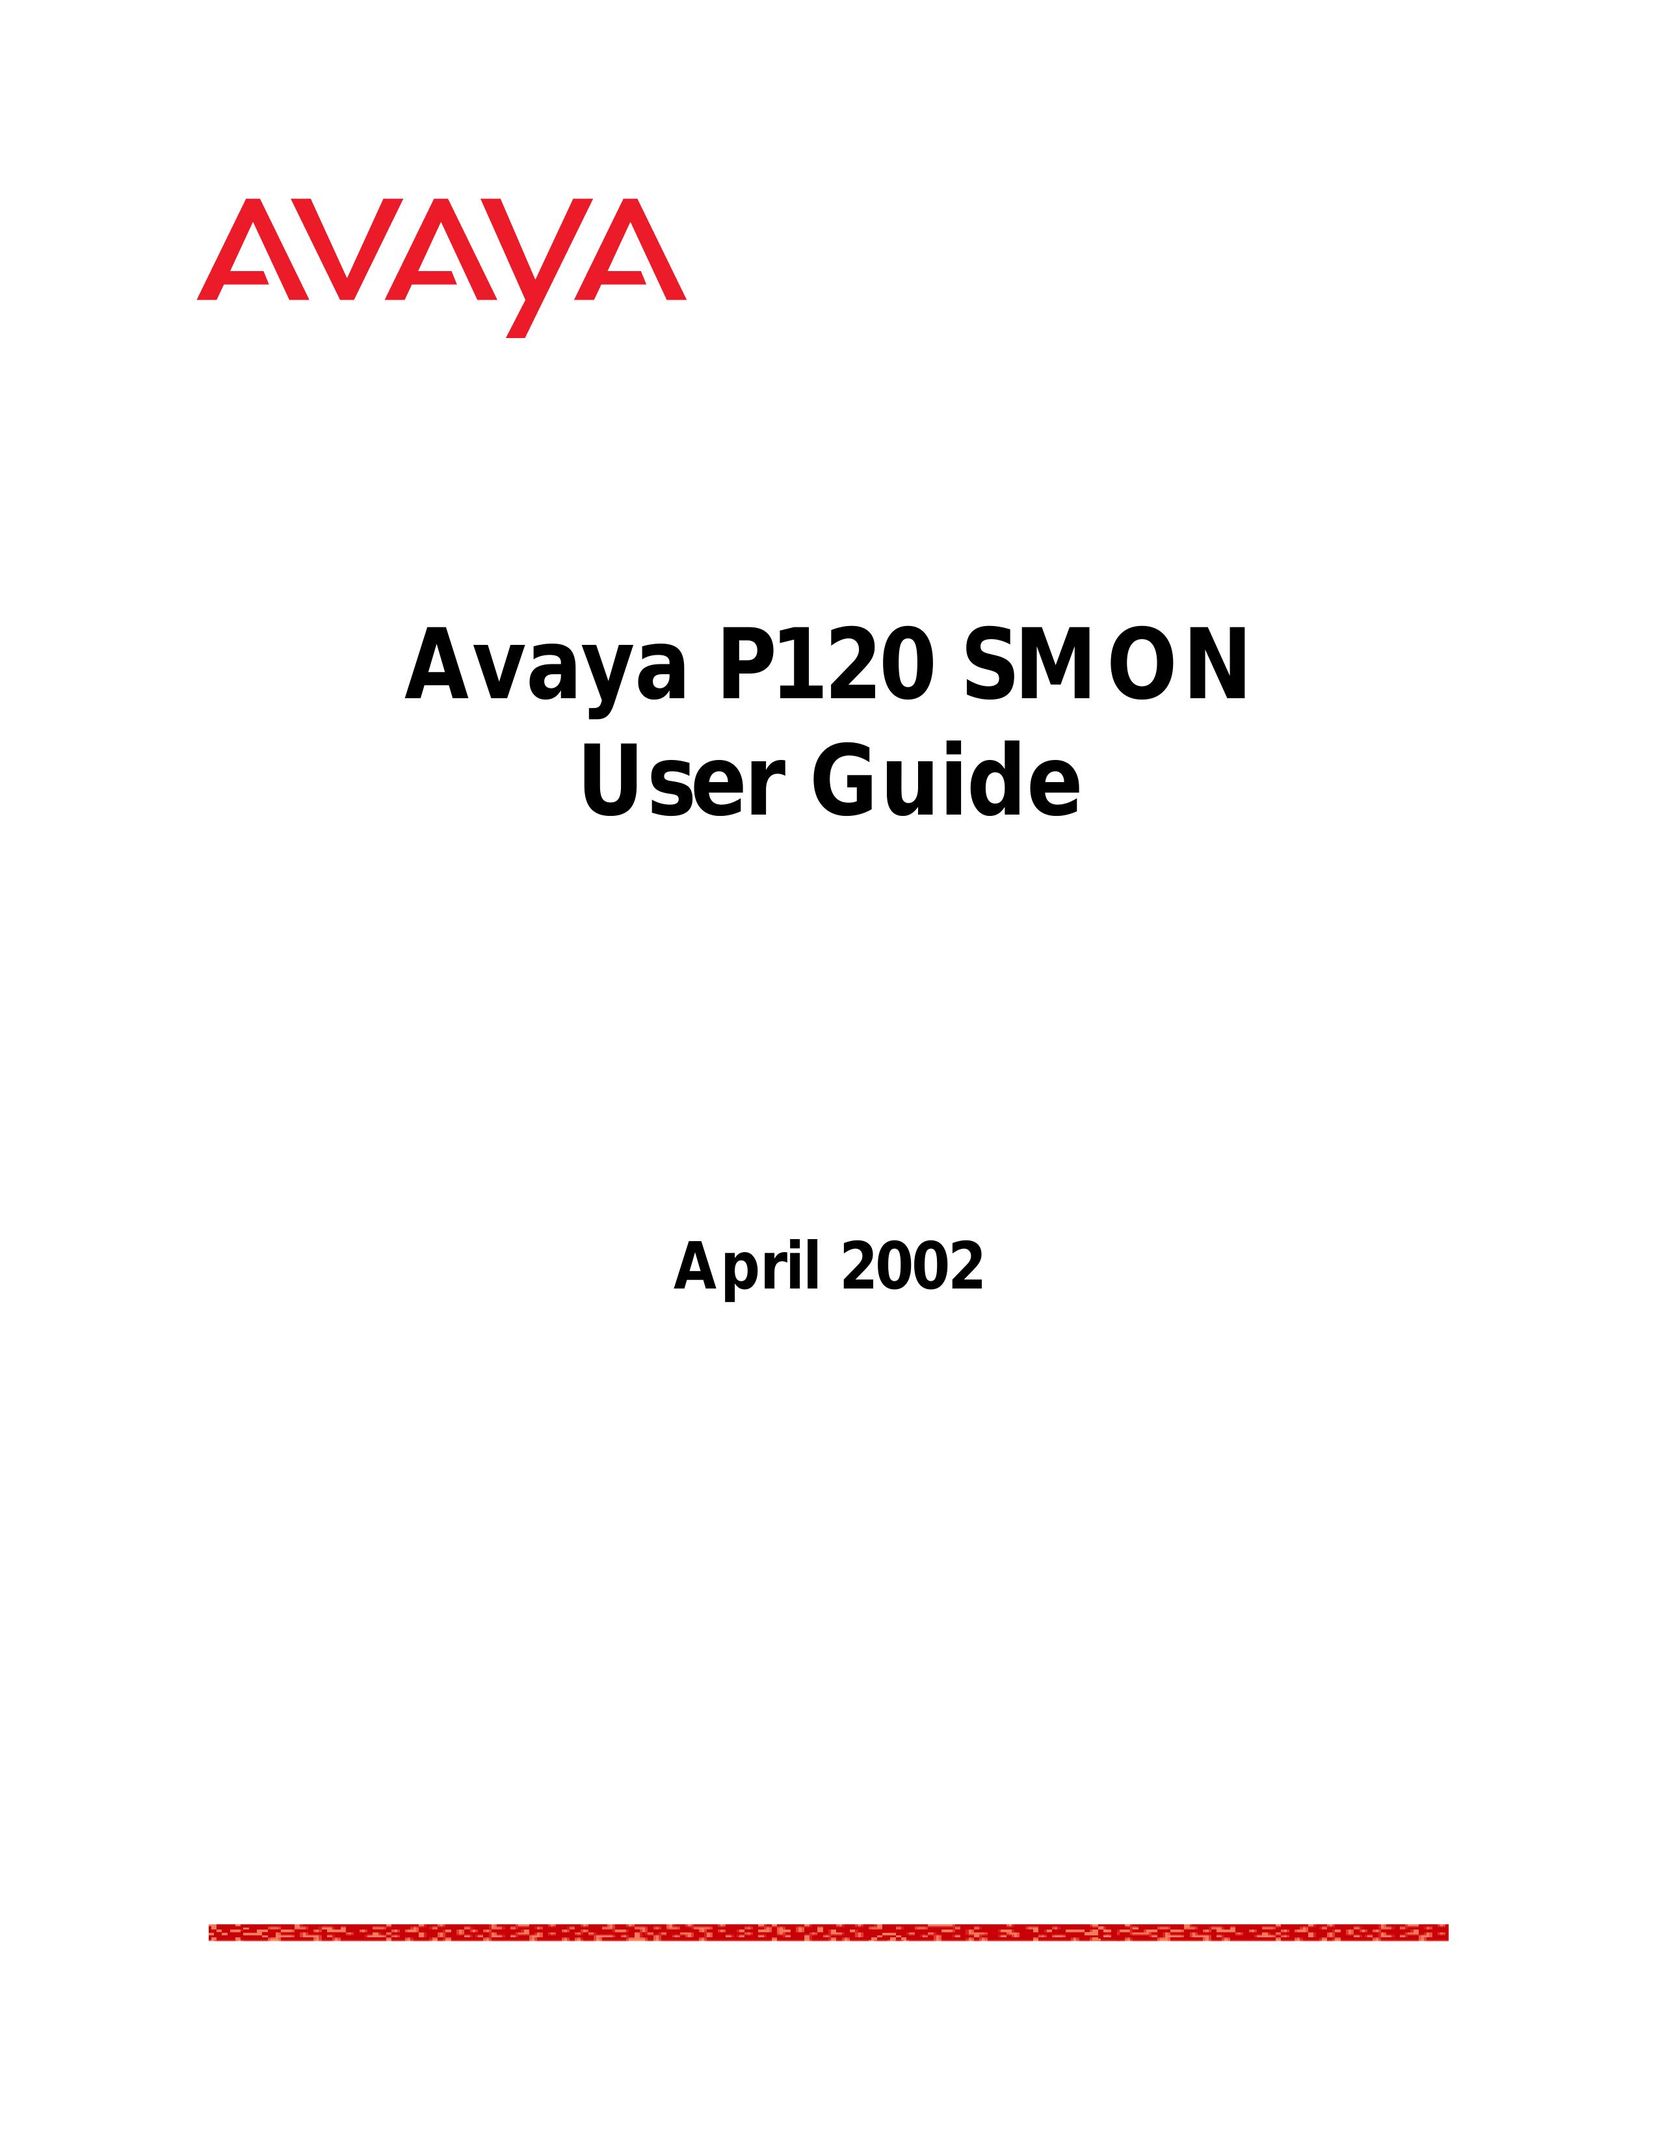 Avaya P120 SMON Switch User Manual